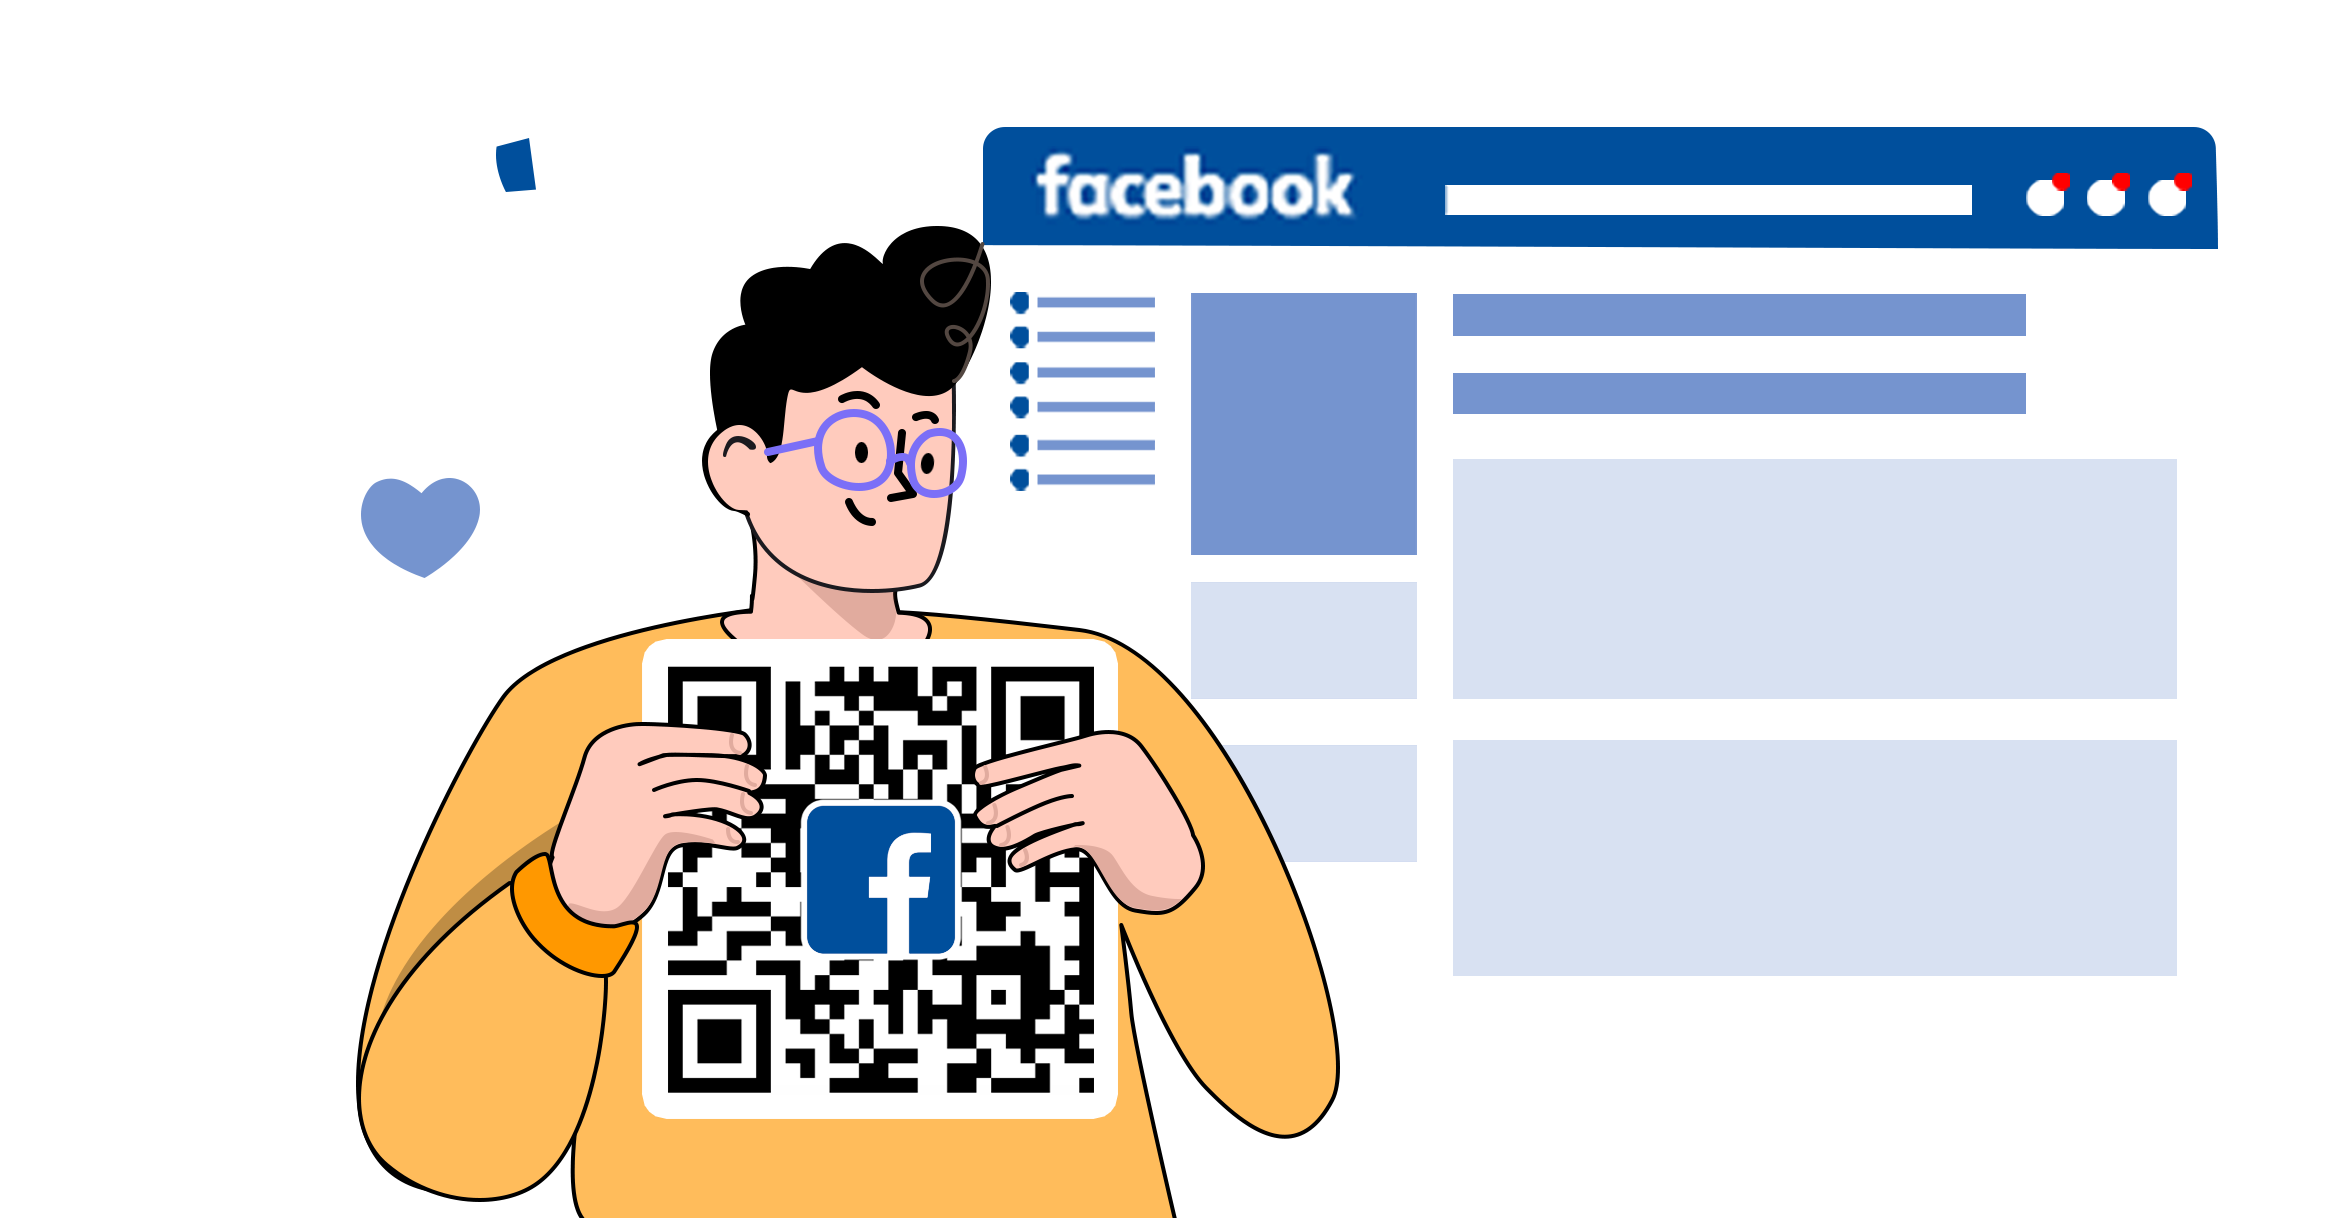 QR код для страницы на фейсбук